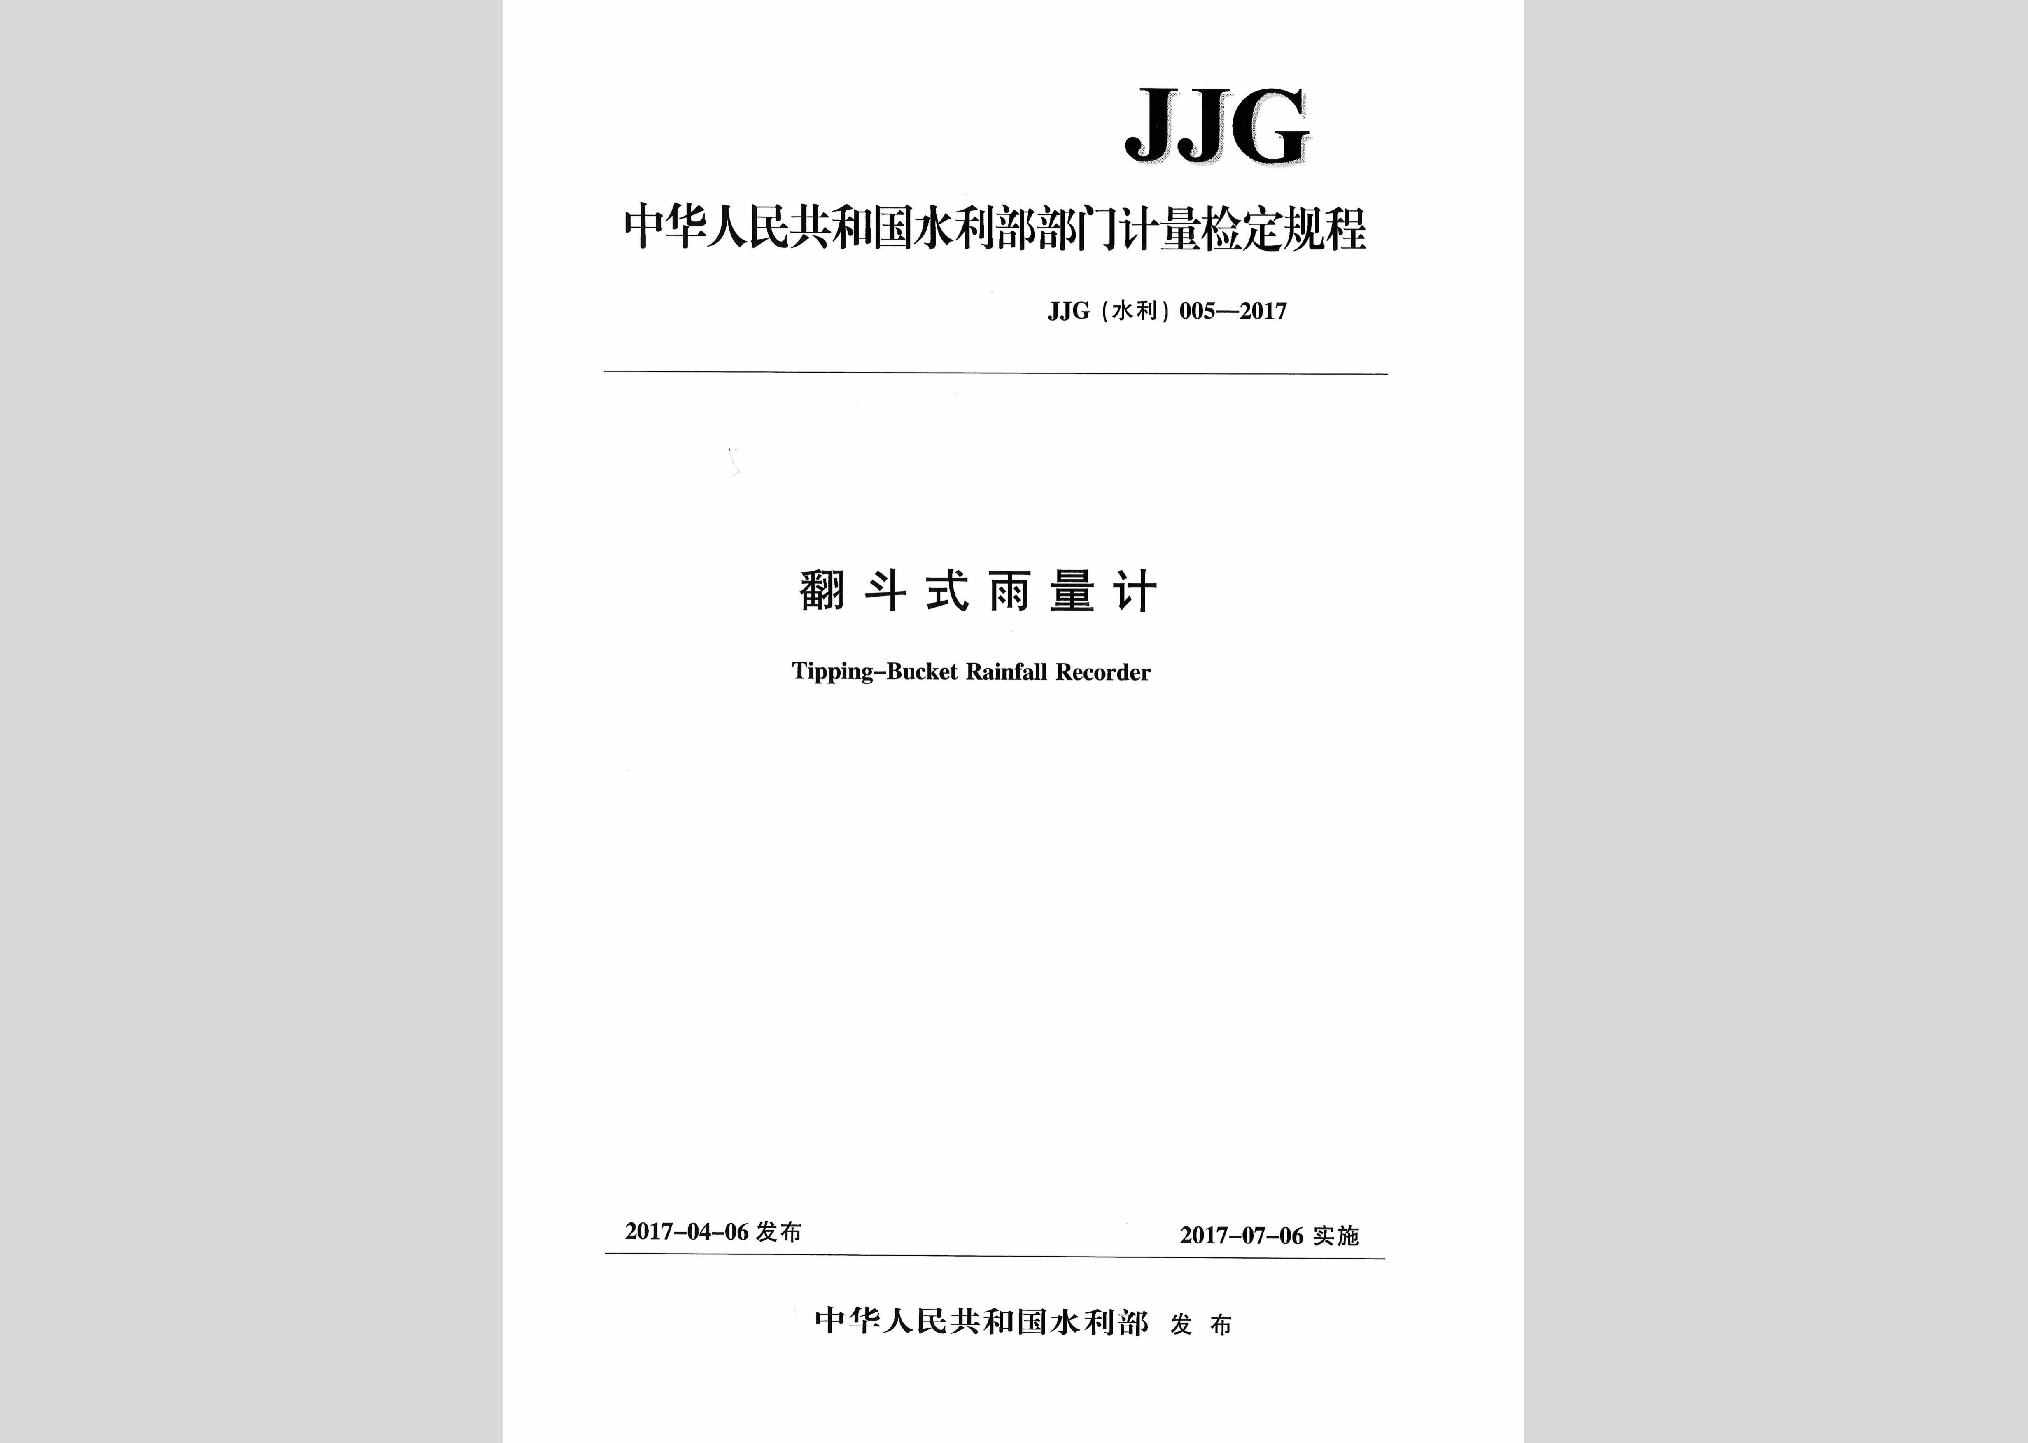 JJG（水利）005-2017：翻斗式雨量计